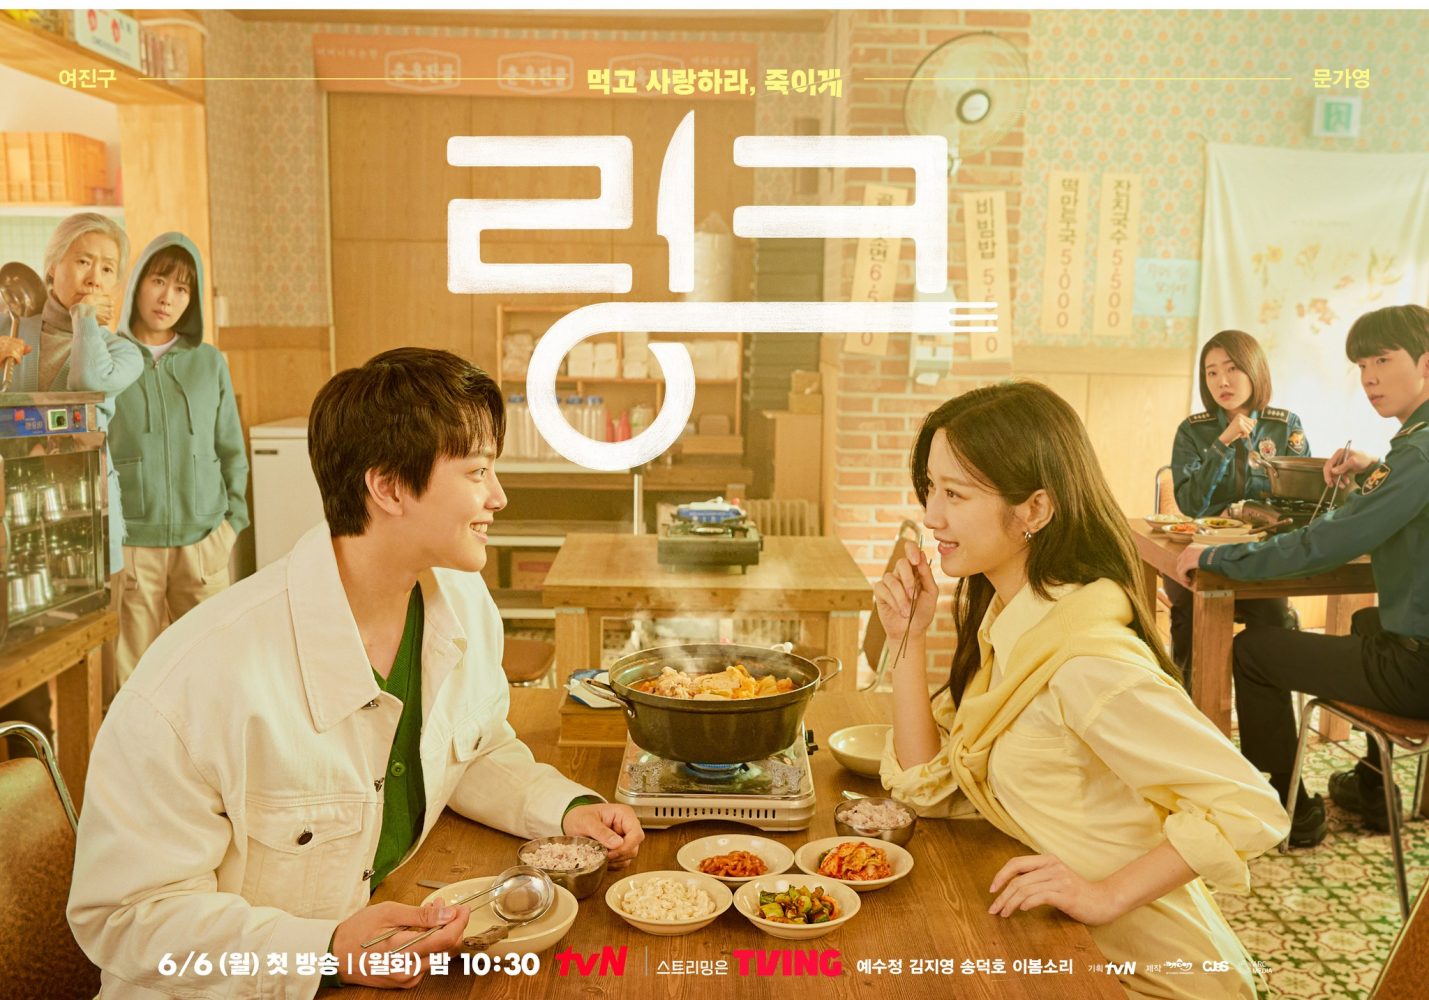 Phim mới của Yeo Jin Goo: Liên kết: ăn, yêu, chết - Link: Eat, Love, Kill (2022)